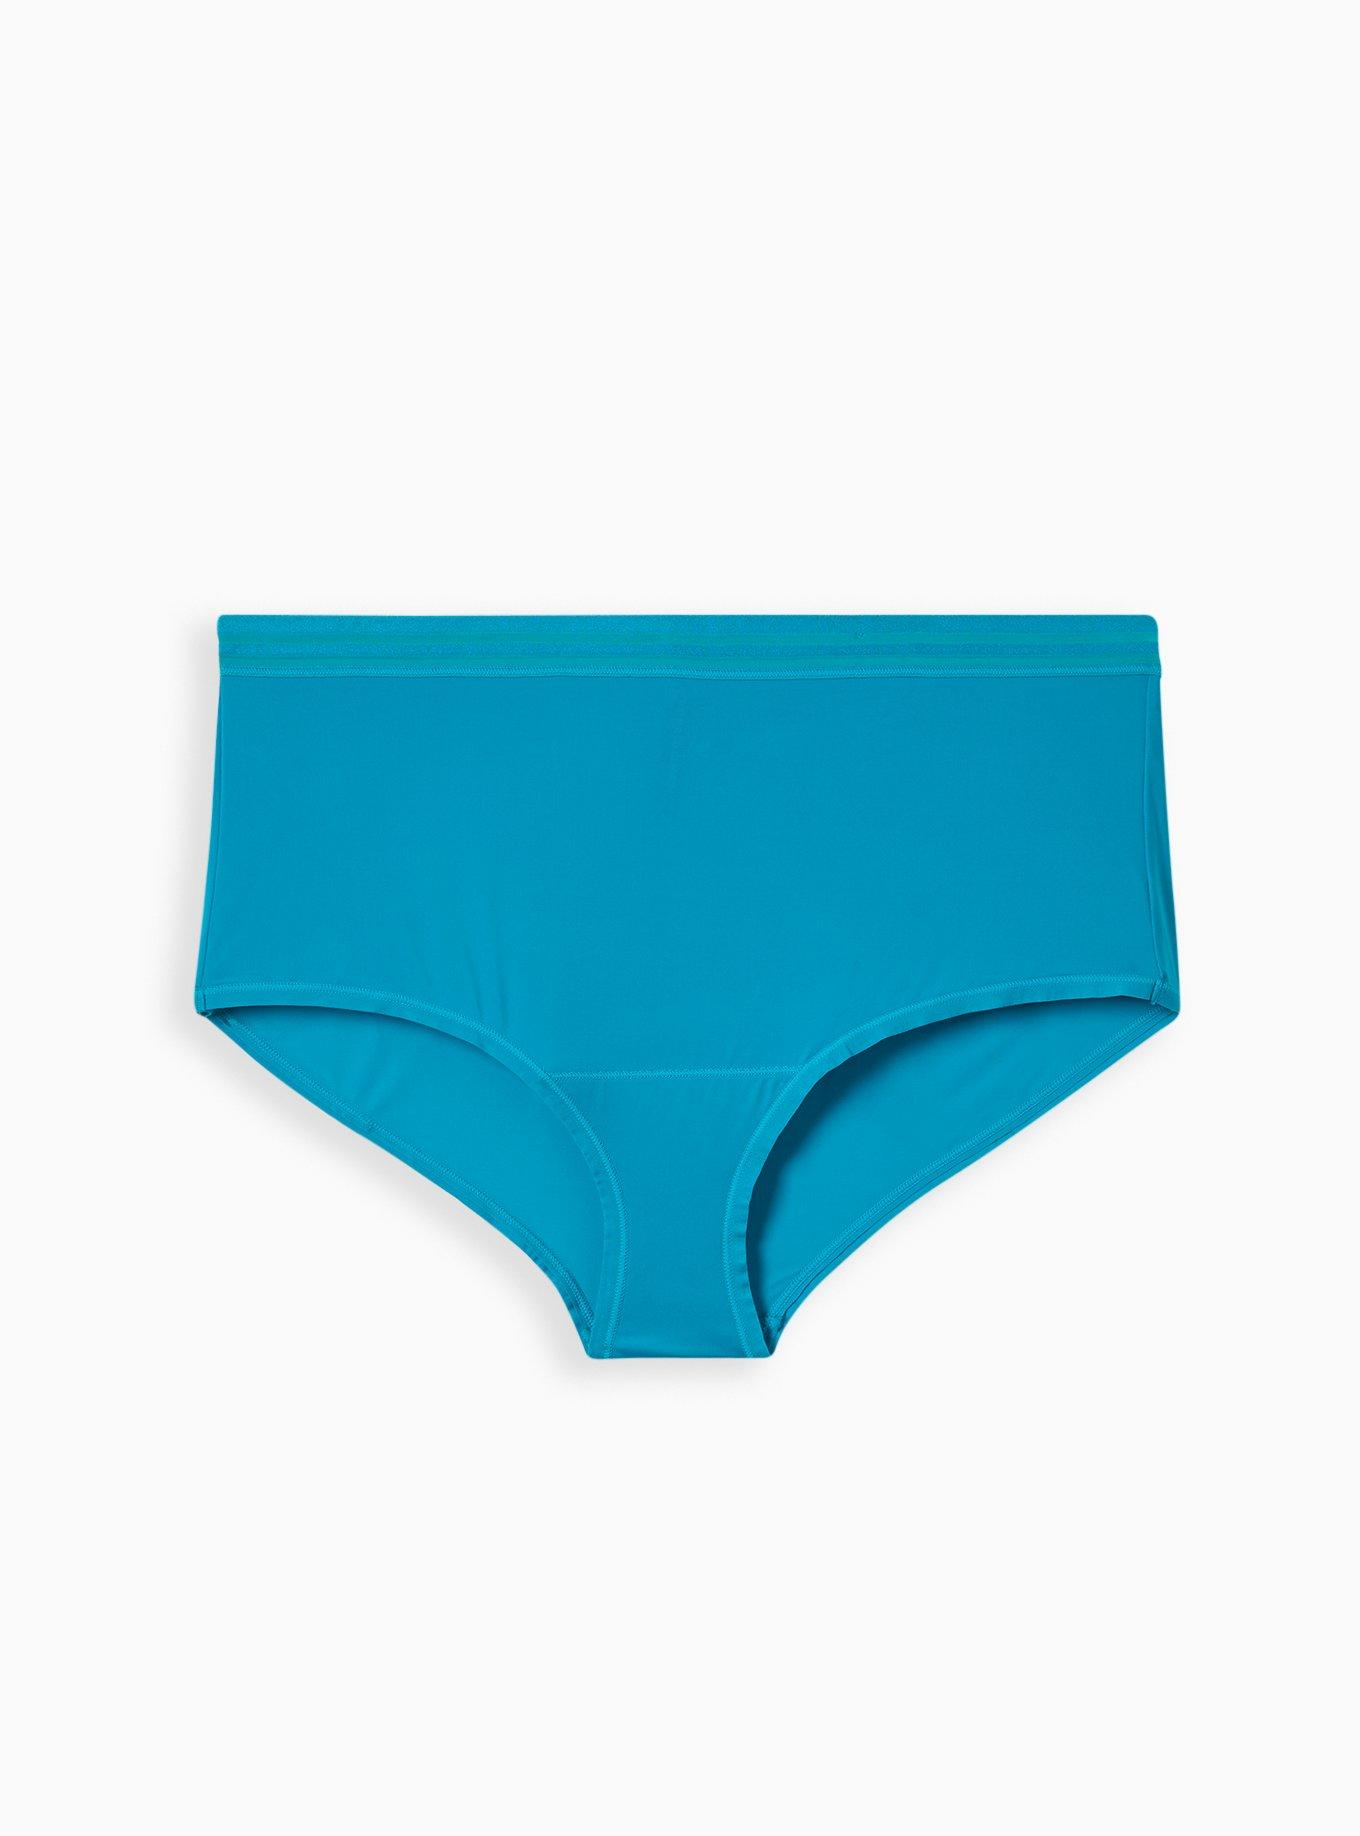 2-PACK NWT Women's Torrid Panties Underwear Thong Sz. 1 X-Large